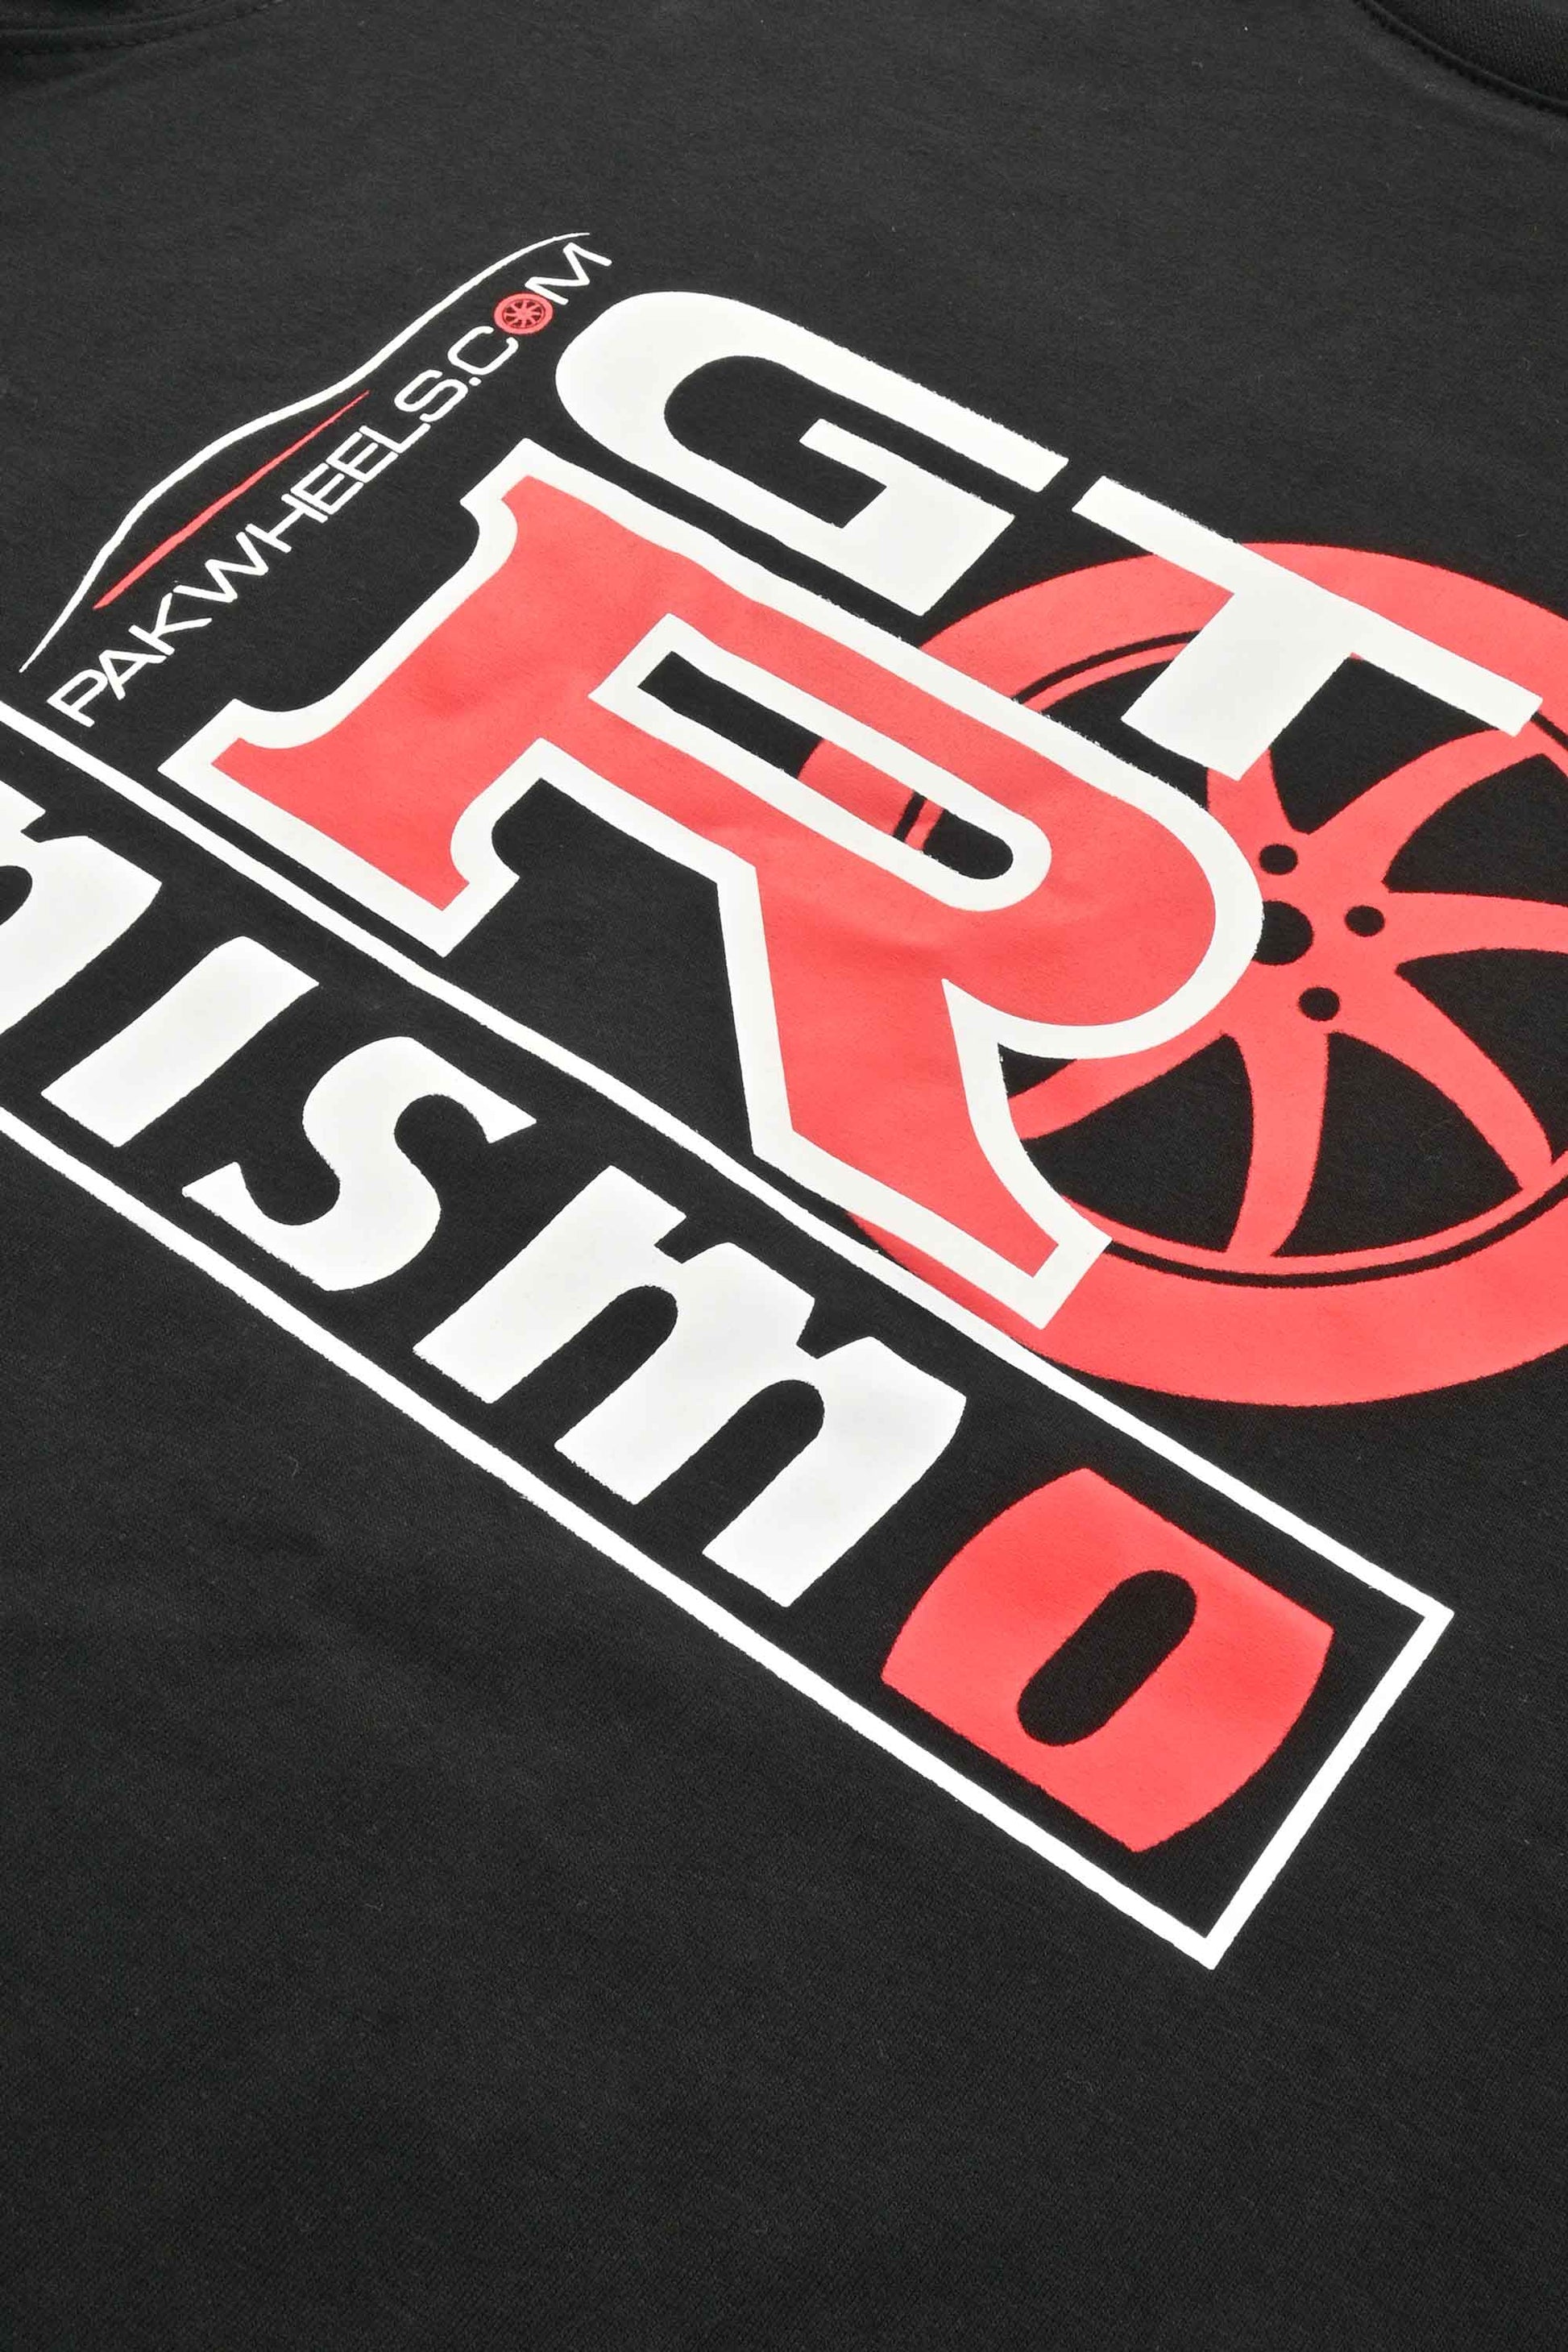 Polo Republica Men's GTR NISMO Printed Short Sleeve Tee Shirt